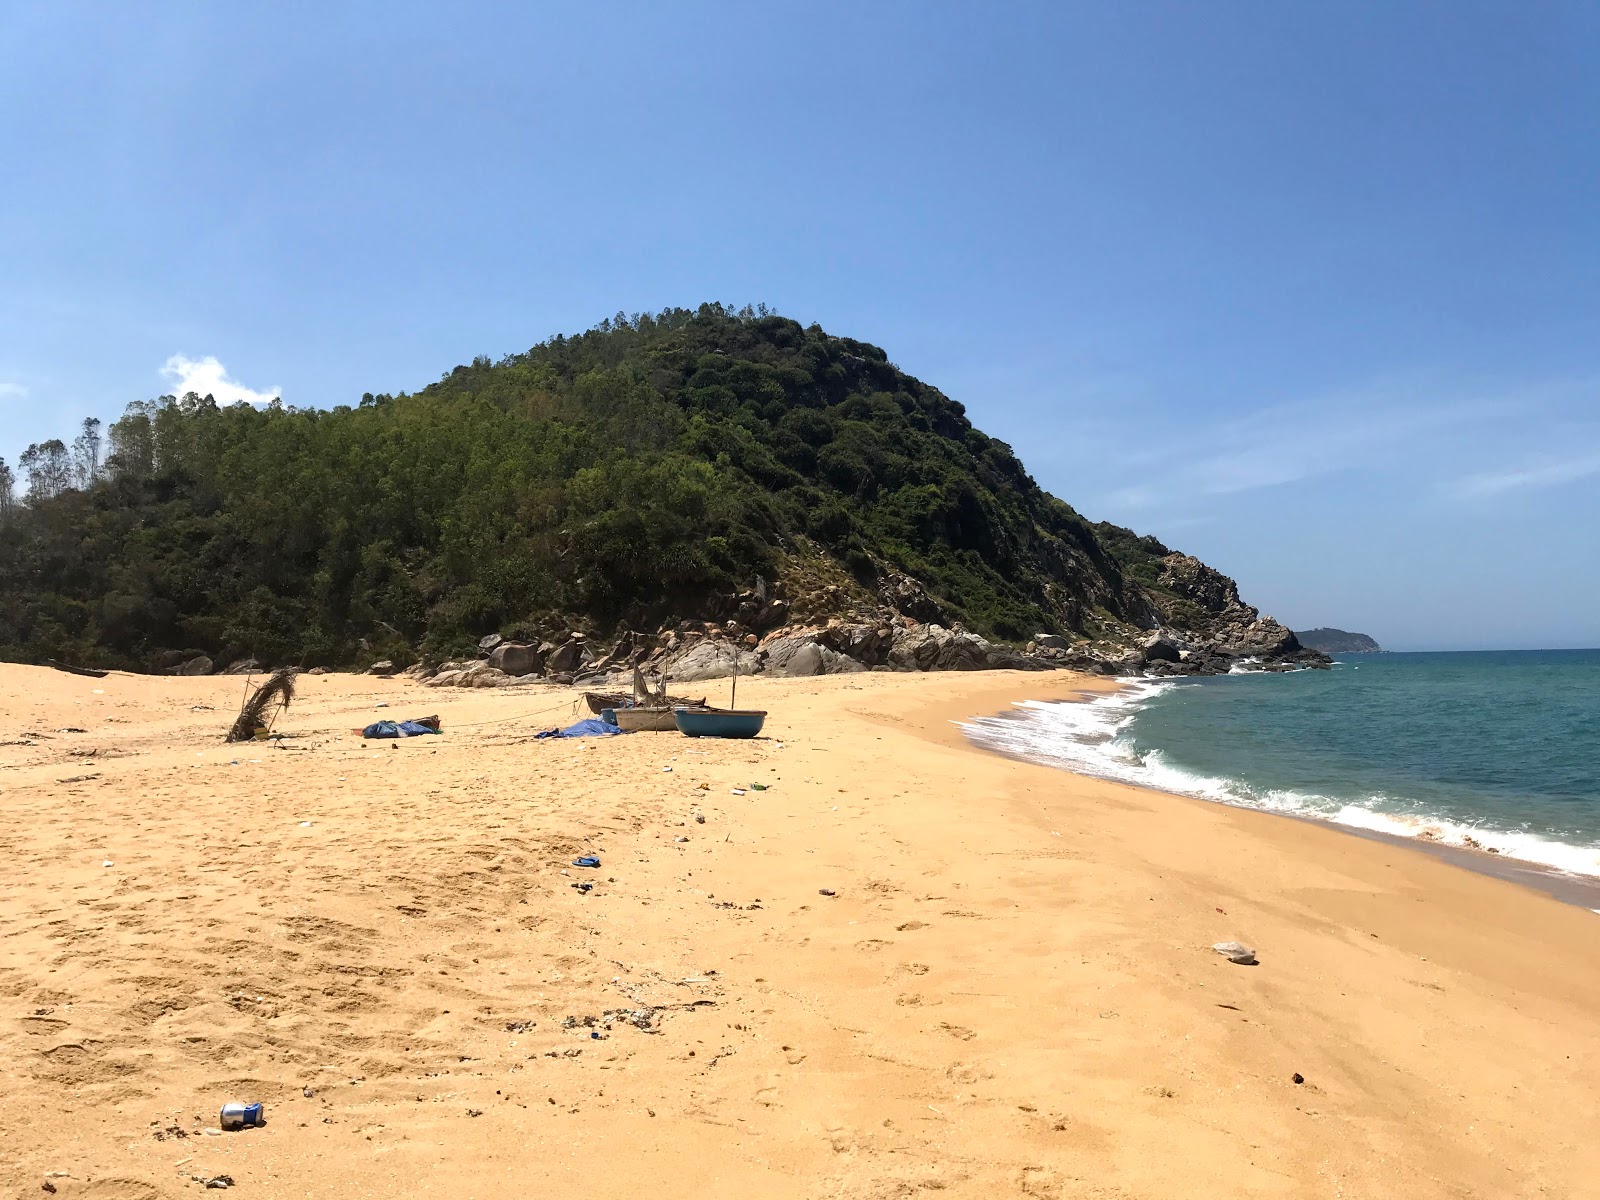 Fotografie cu Chau Me Beach II cu o suprafață de nisip strălucitor